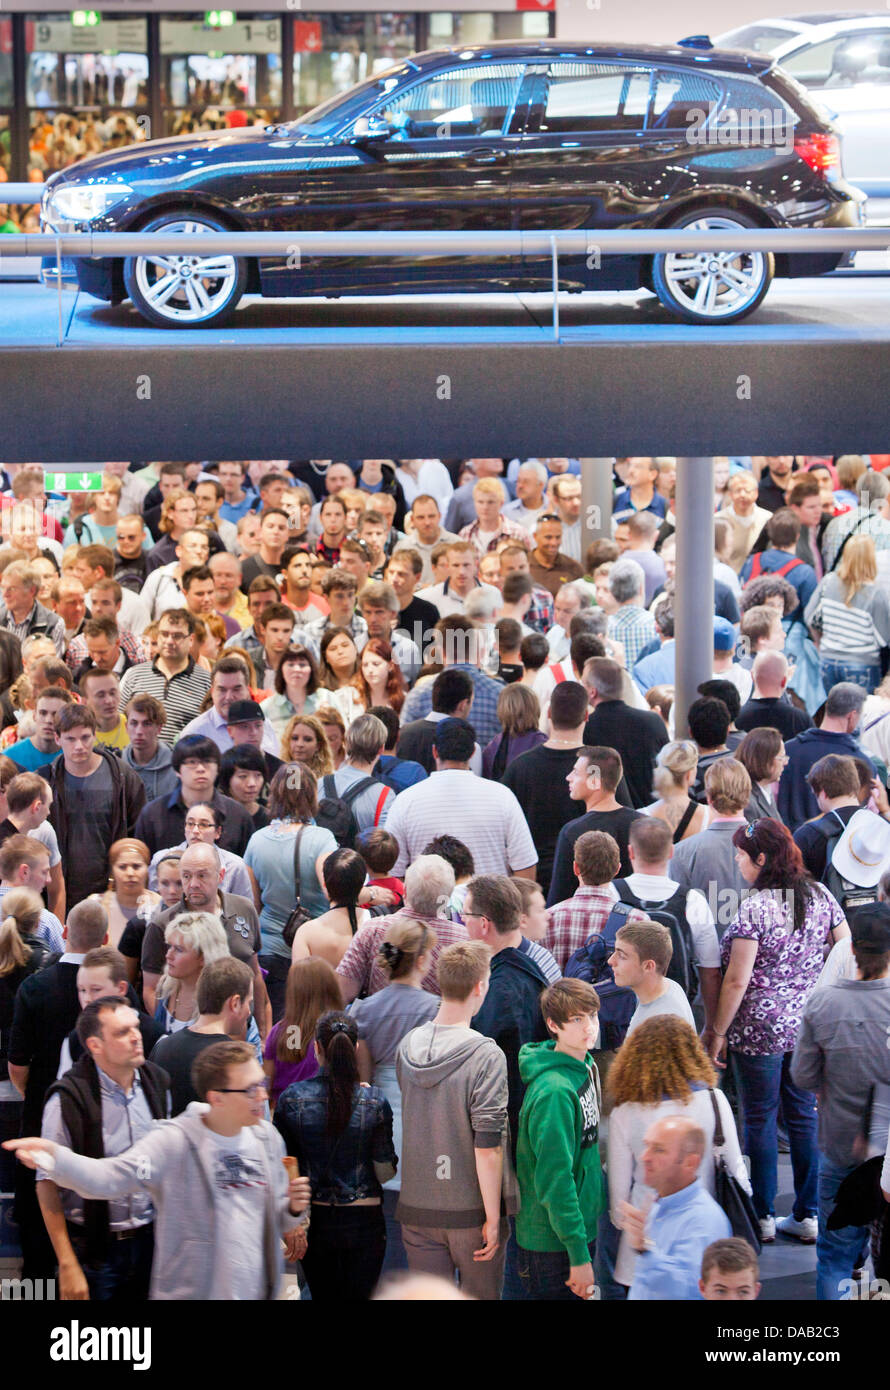 La BMW hall est encombrée de visiteurs au salon de Francfort (IAA) à Francfort-sur-Main, Allemagne 24 septembre 2011. Selon l'Association de l'industrie automobile allemande (VDA), l'AAI a eu beaucoup plus de visiteurs que prévu. Photo : FRANK RUMPENHORST Banque D'Images